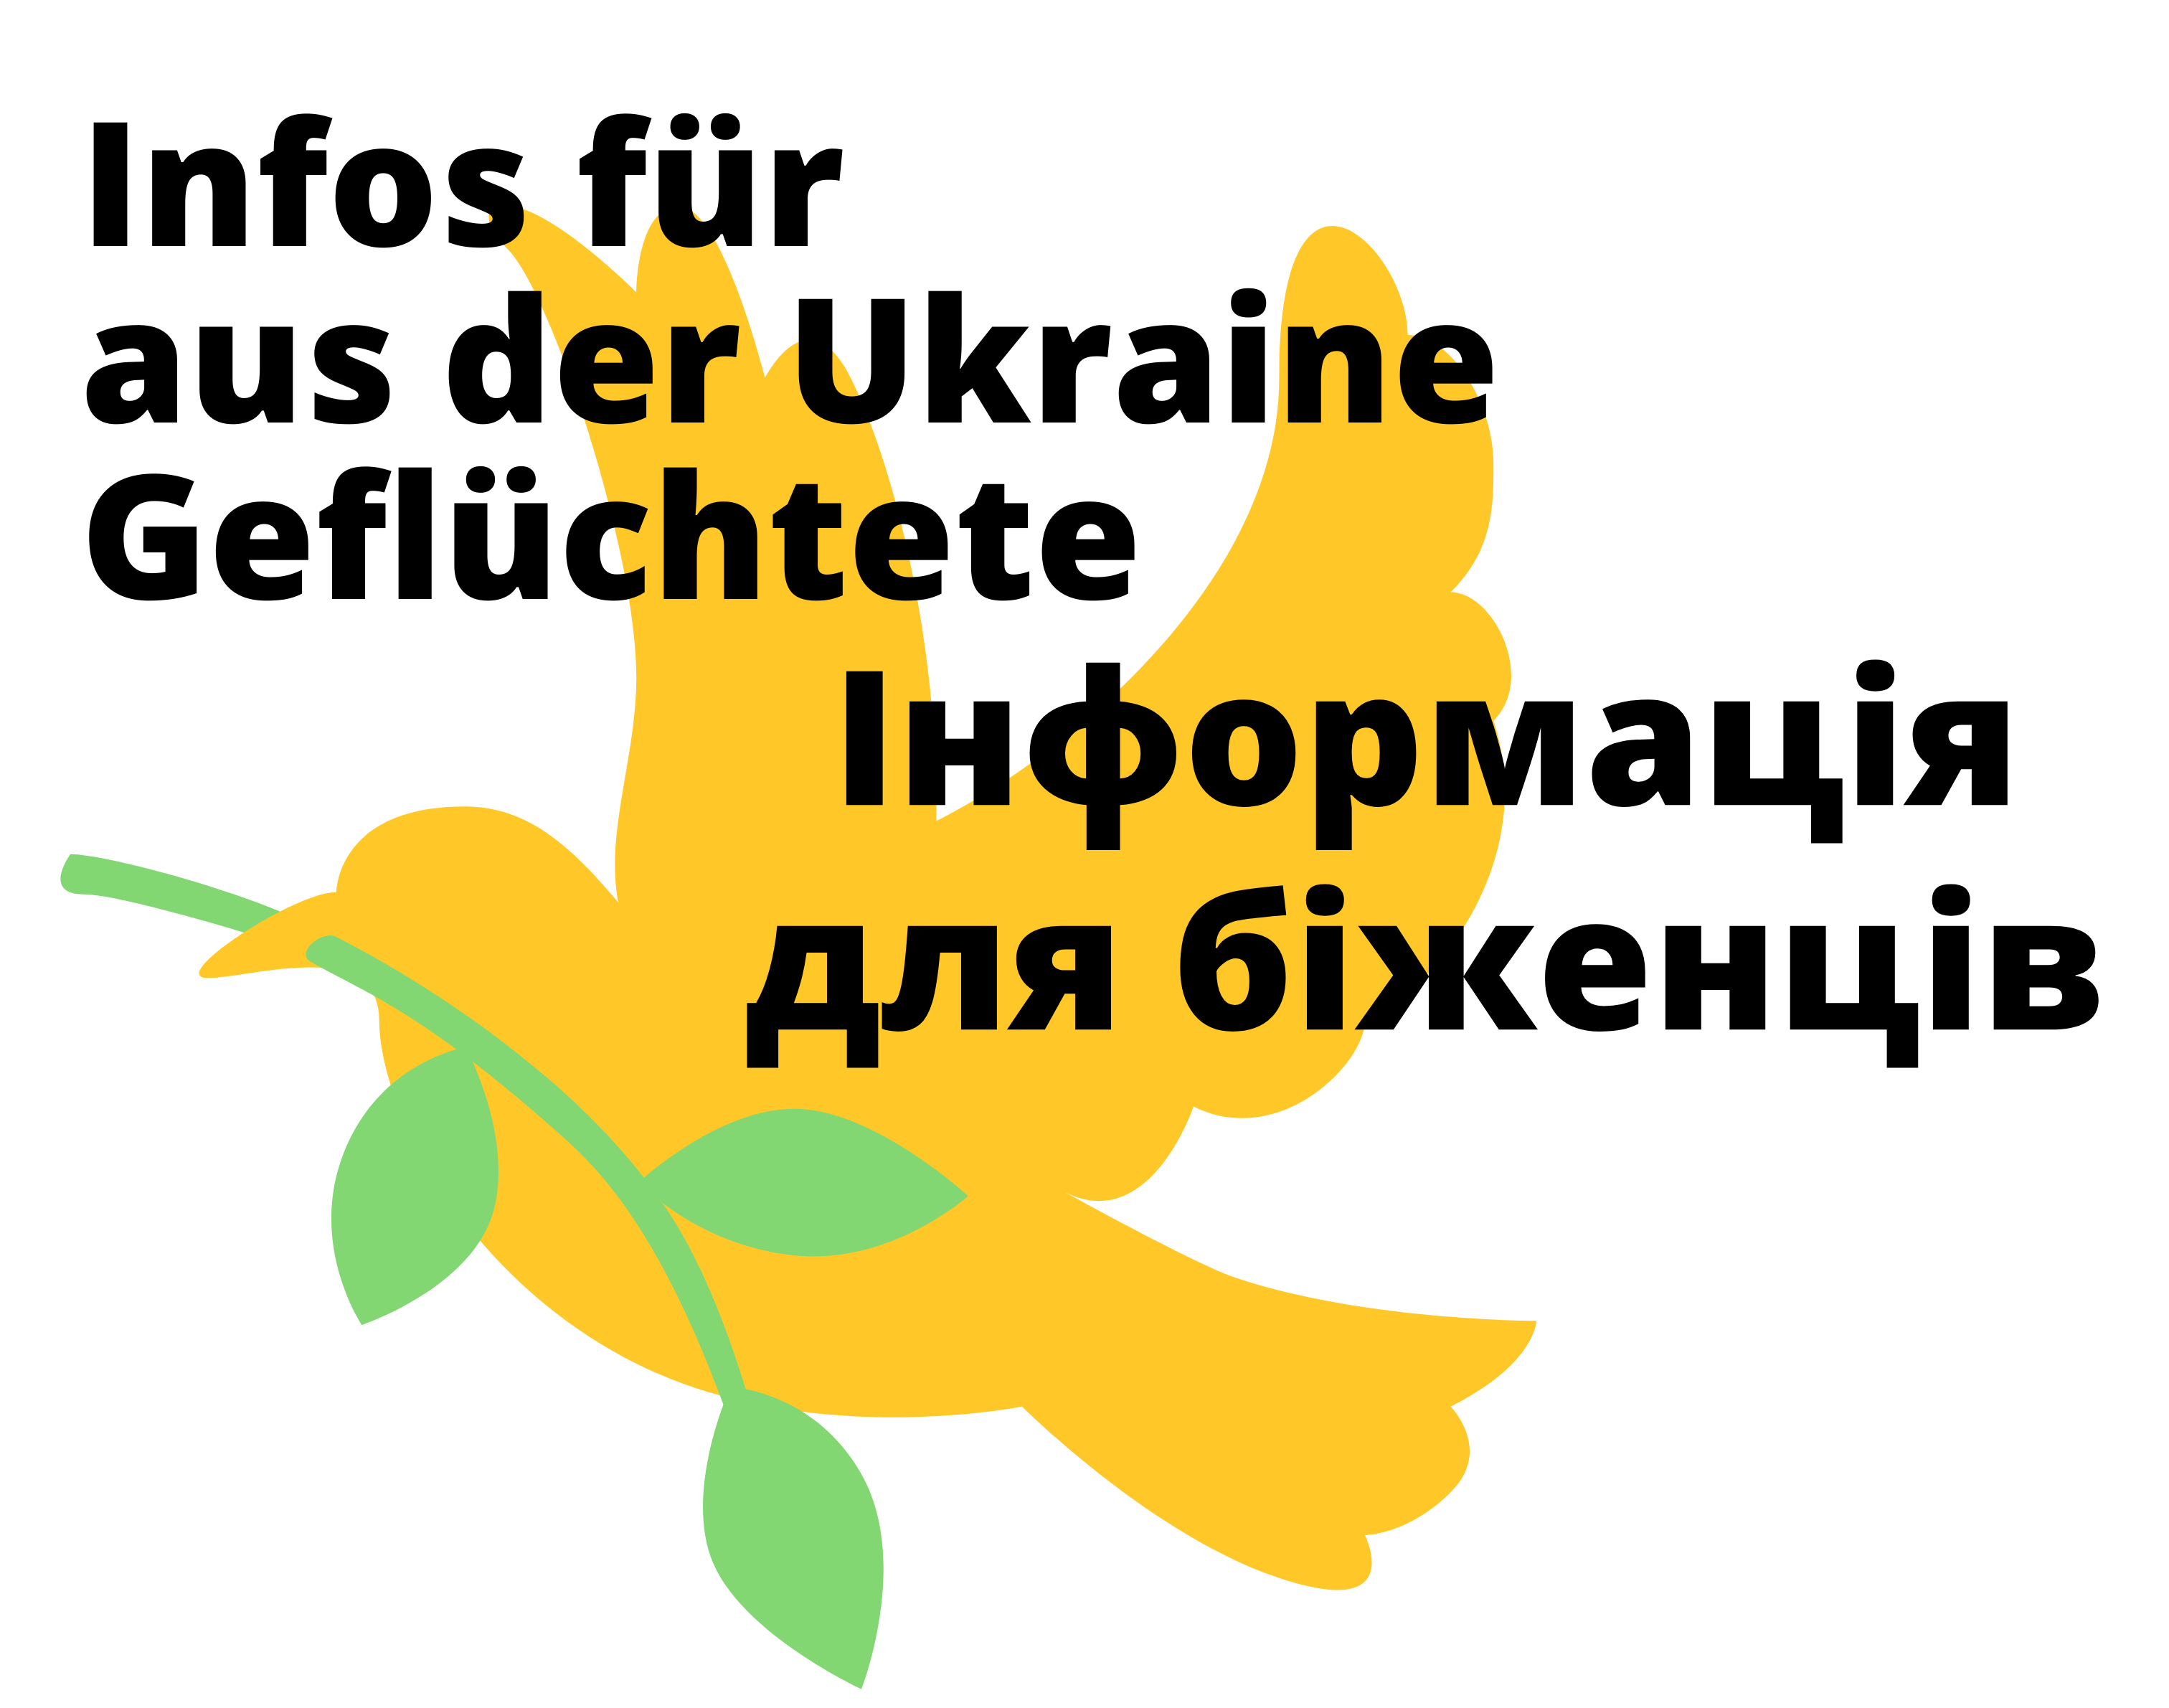 Infos für aus der Ukraine geflüchtete Menschen